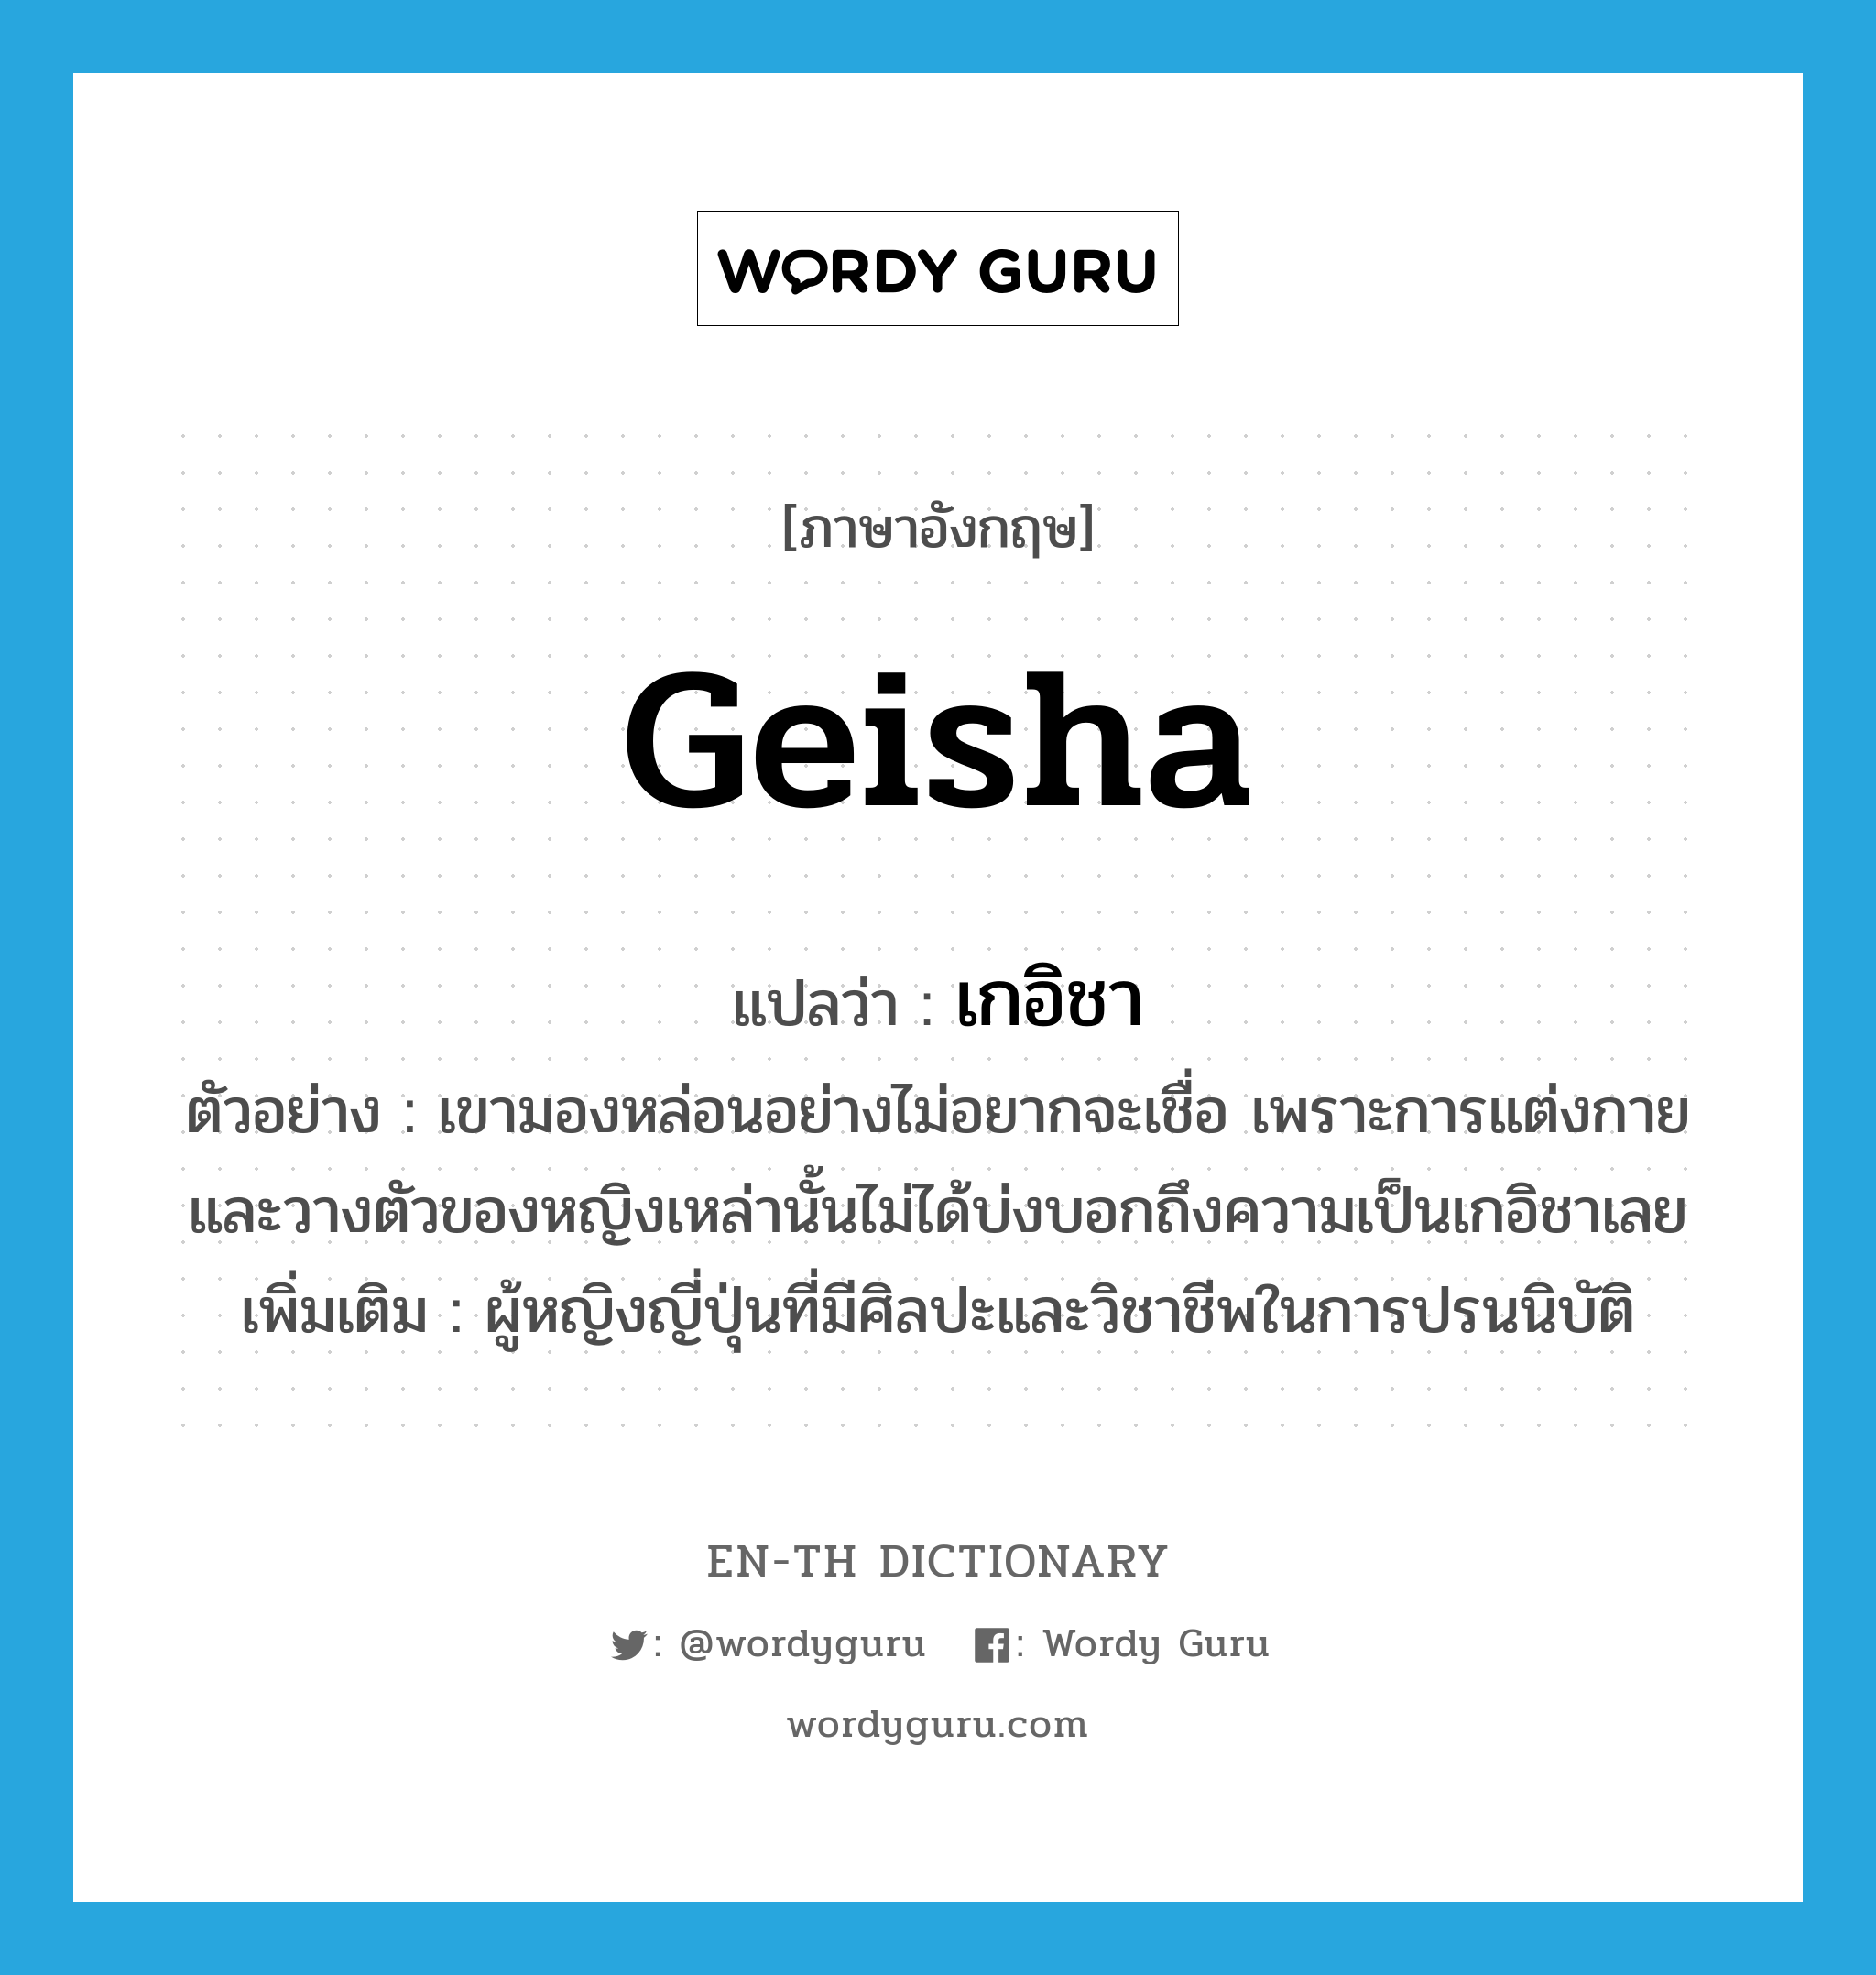 geisha แปลว่า?, คำศัพท์ภาษาอังกฤษ geisha แปลว่า เกอิชา ประเภท N ตัวอย่าง เขามองหล่อนอย่างไม่อยากจะเชื่อ เพราะการแต่งกายและวางตัวของหญิงเหล่านั้นไม่ได้บ่งบอกถึงความเป็นเกอิชาเลย เพิ่มเติม ผู้หญิงญี่ปุ่นที่มีศิลปะและวิชาชีพในการปรนนิบัติ หมวด N